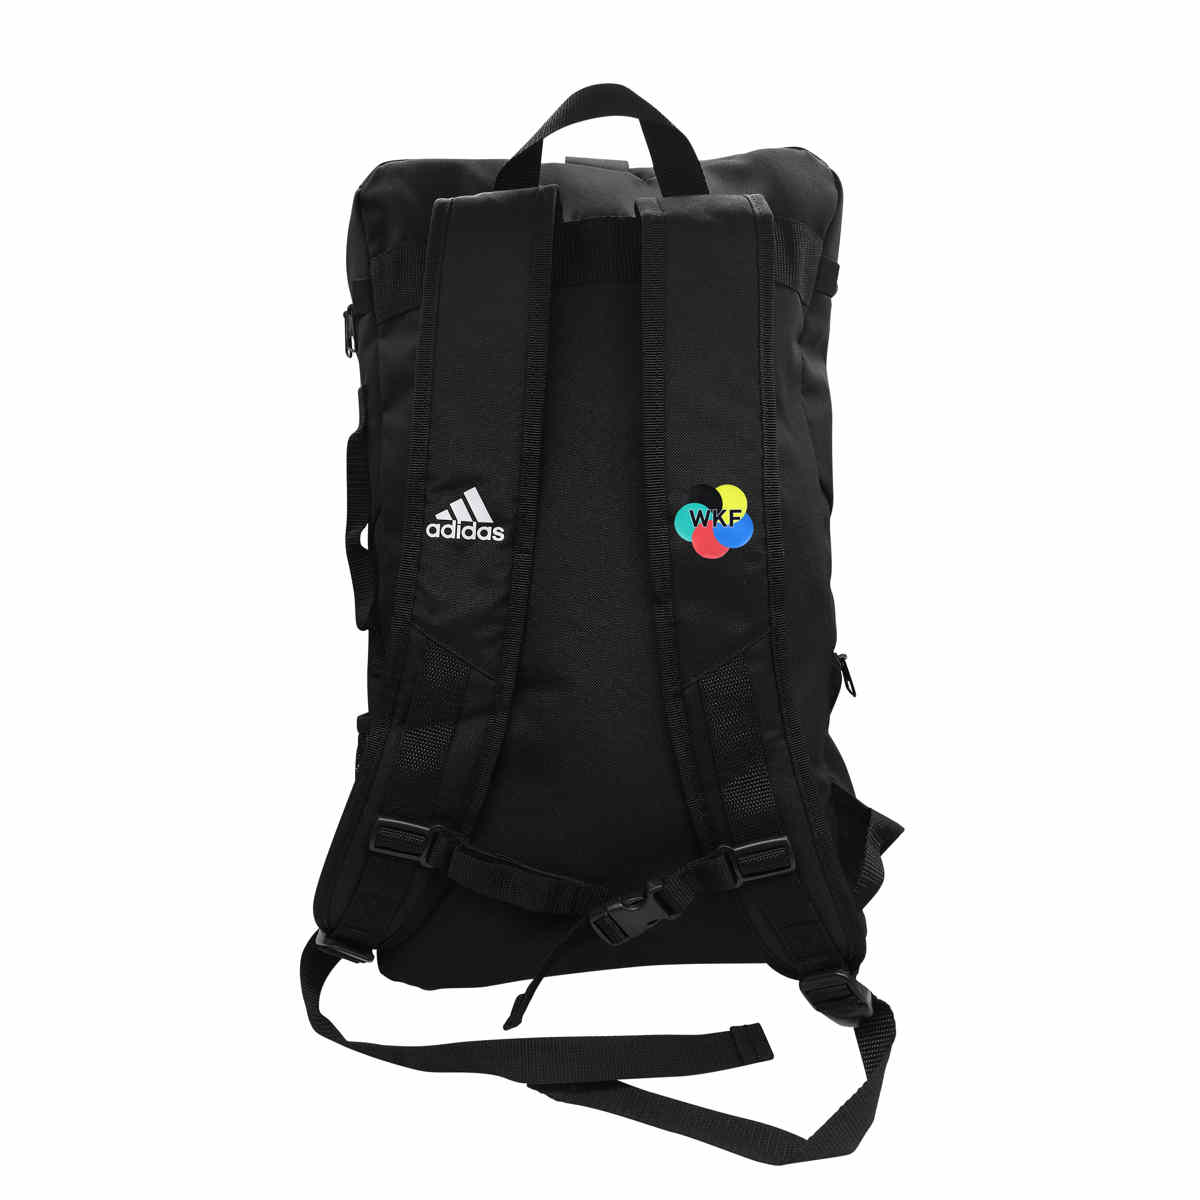 Adidas Karate Bag Cheap Sale, SAVE 45% - piv-phuket.com